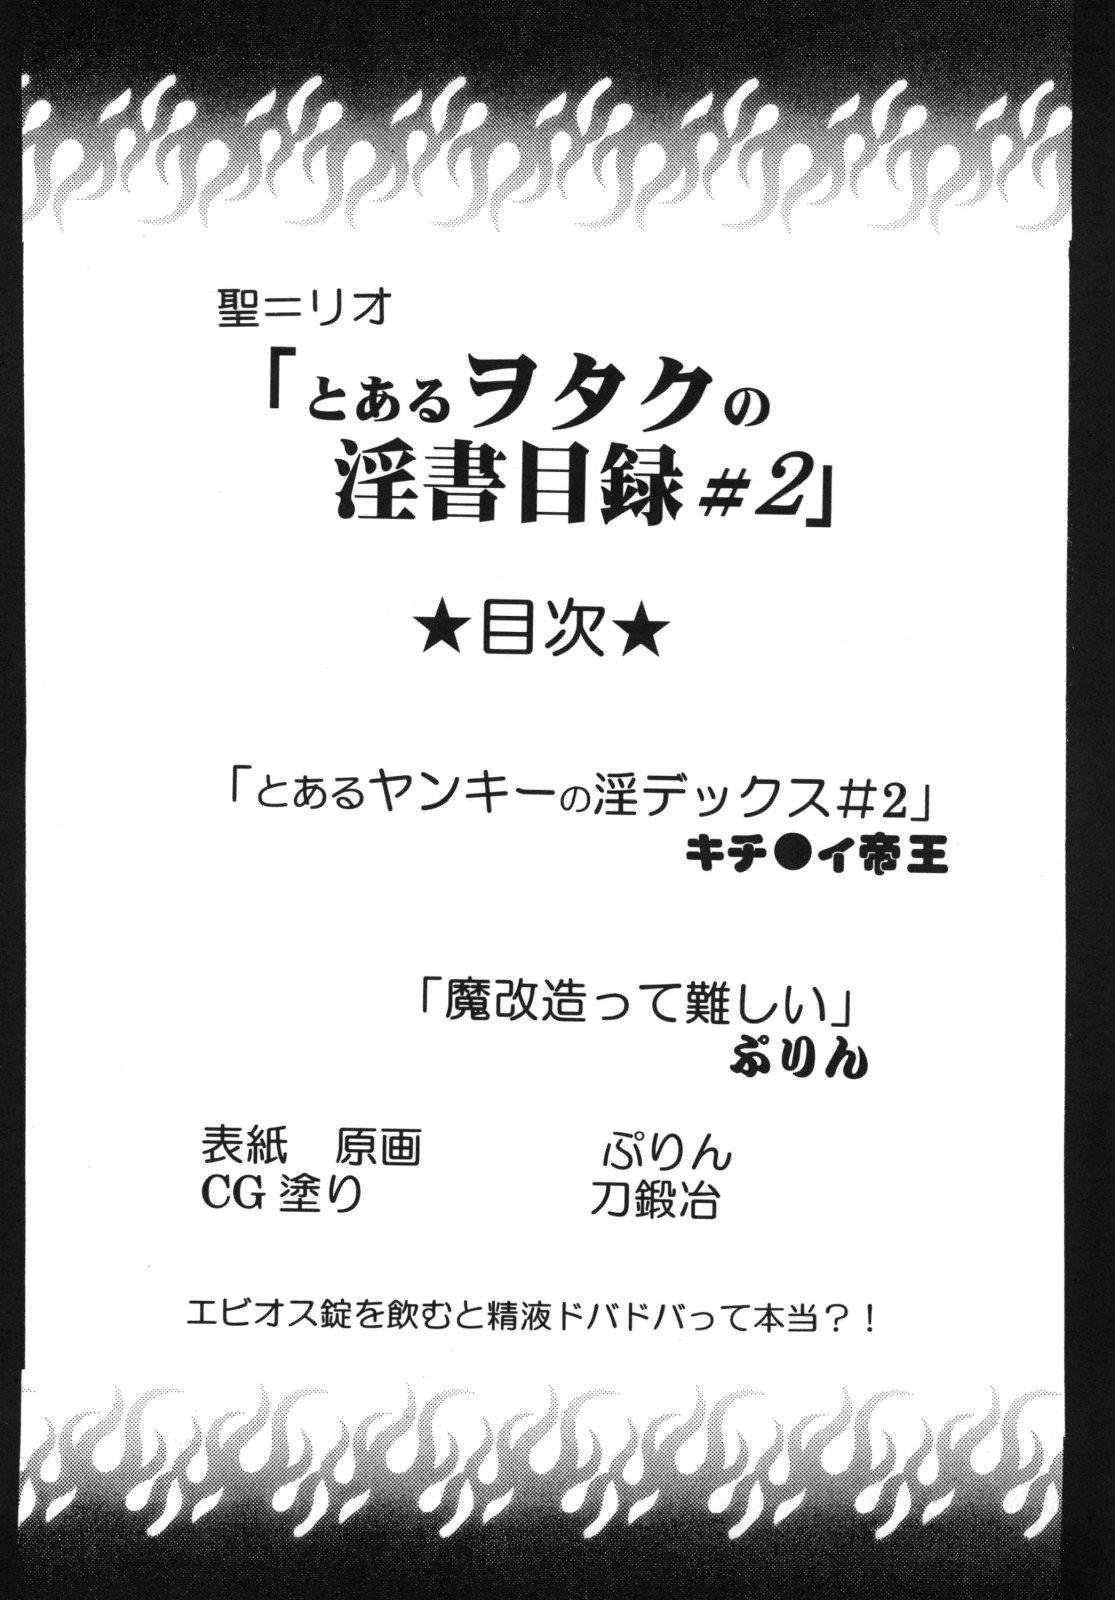 Free Fucking Toaru Otaku no Index #2 - Toaru majutsu no index Guy - Page 4